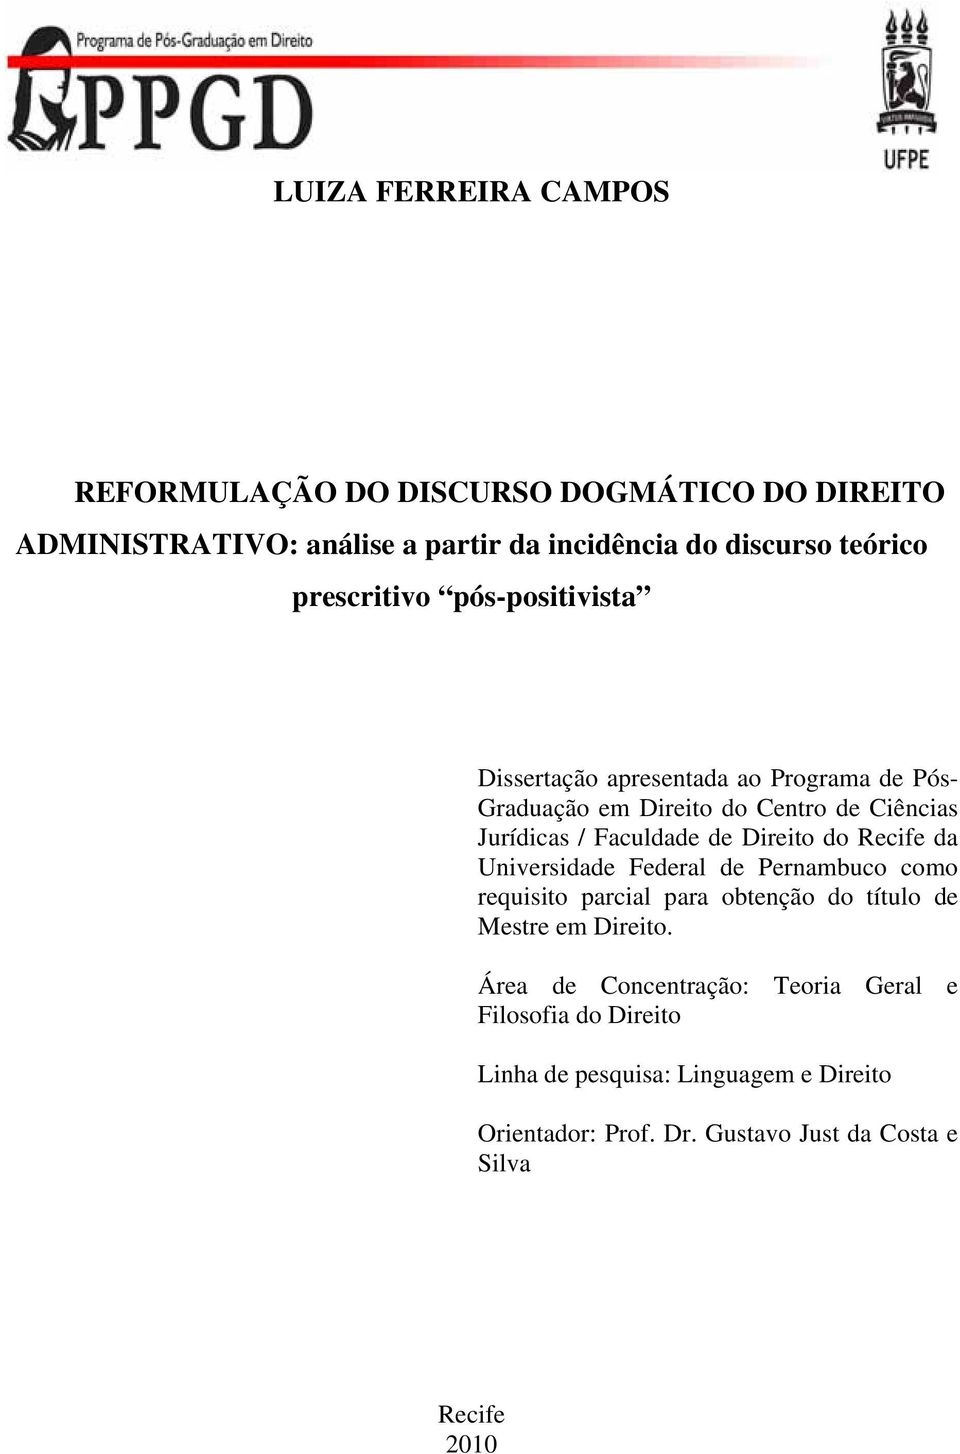 Direito do Recife da Universidade Federal de Pernambuco como requisito parcial para obtenção do título de Mestre em Direito.